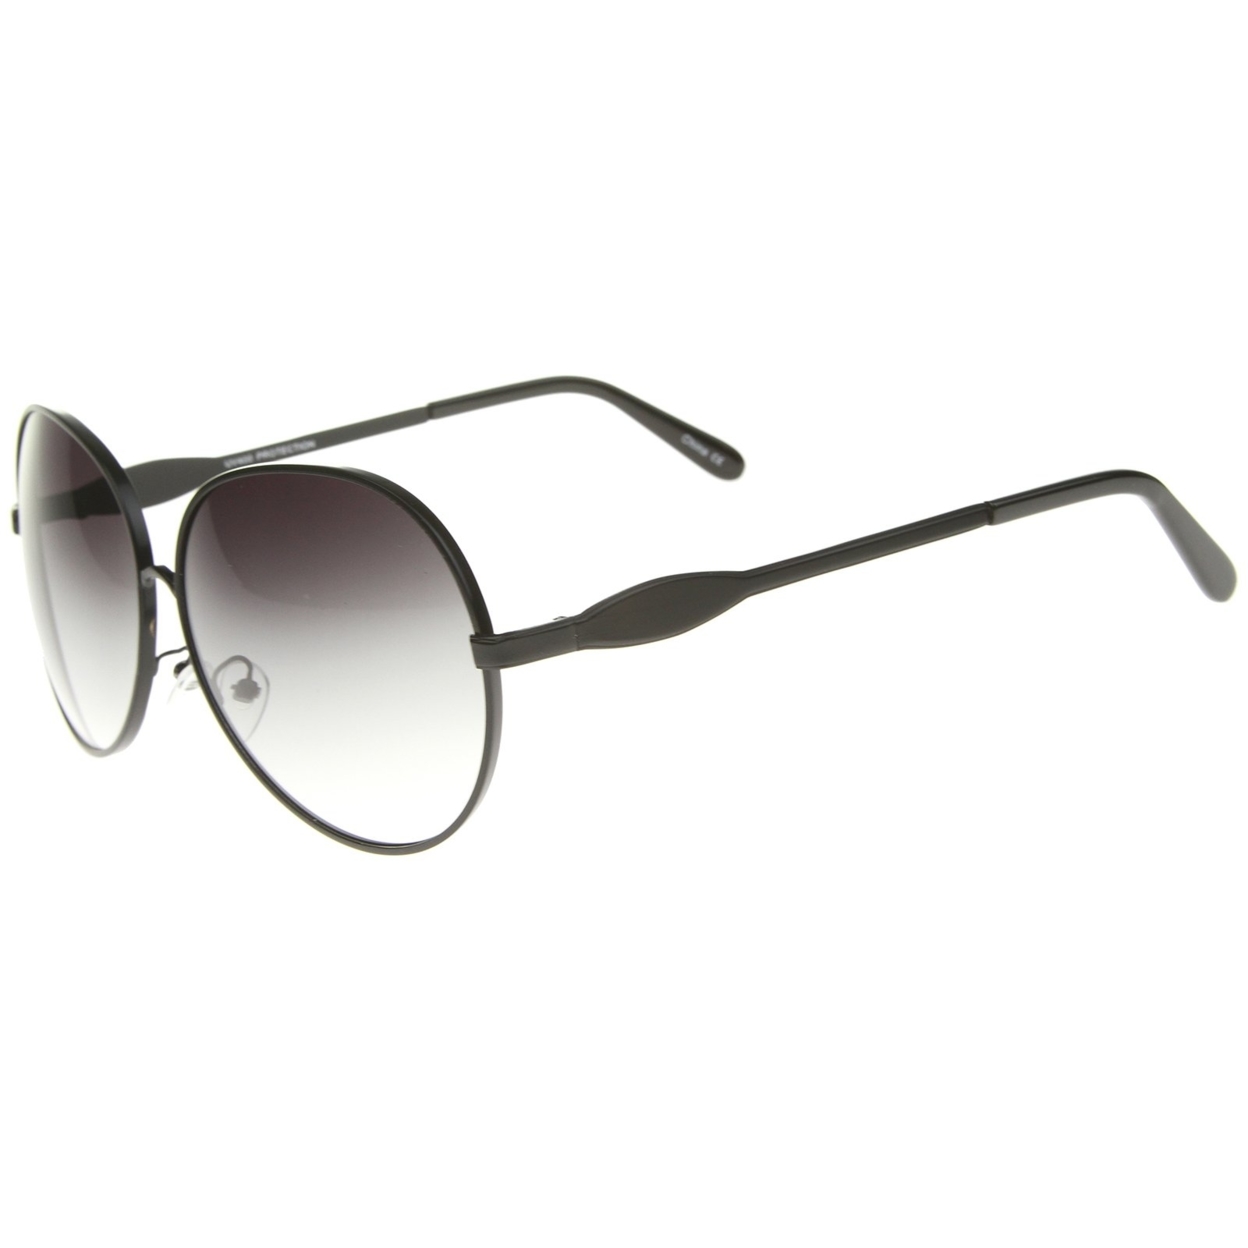 Womens Glam Full Metal Frame Oversized Round Sunglasses 63mm - Black / Lavender